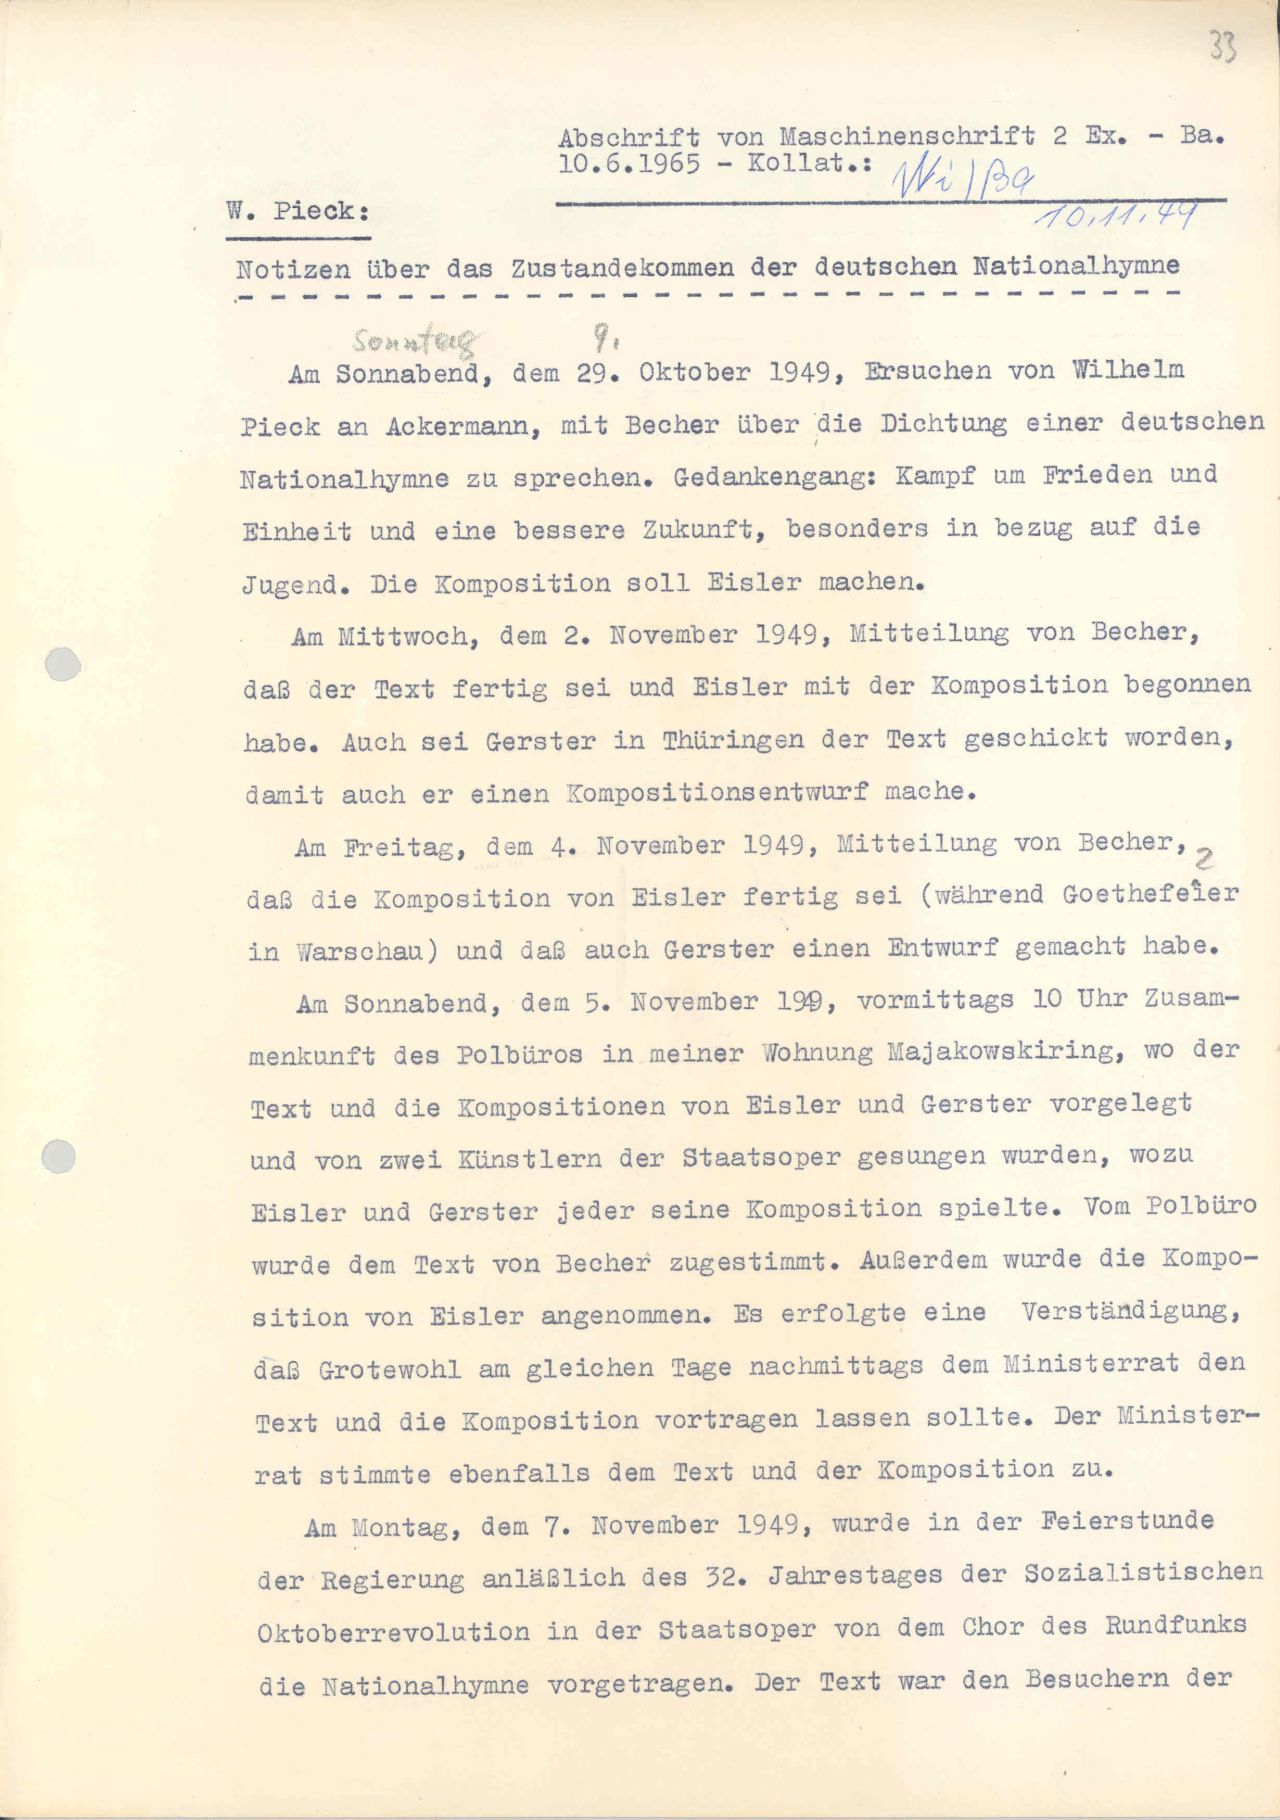 Dokument Wilhelm Pieck über das Zustandekommen der DDR-Nationalhymne